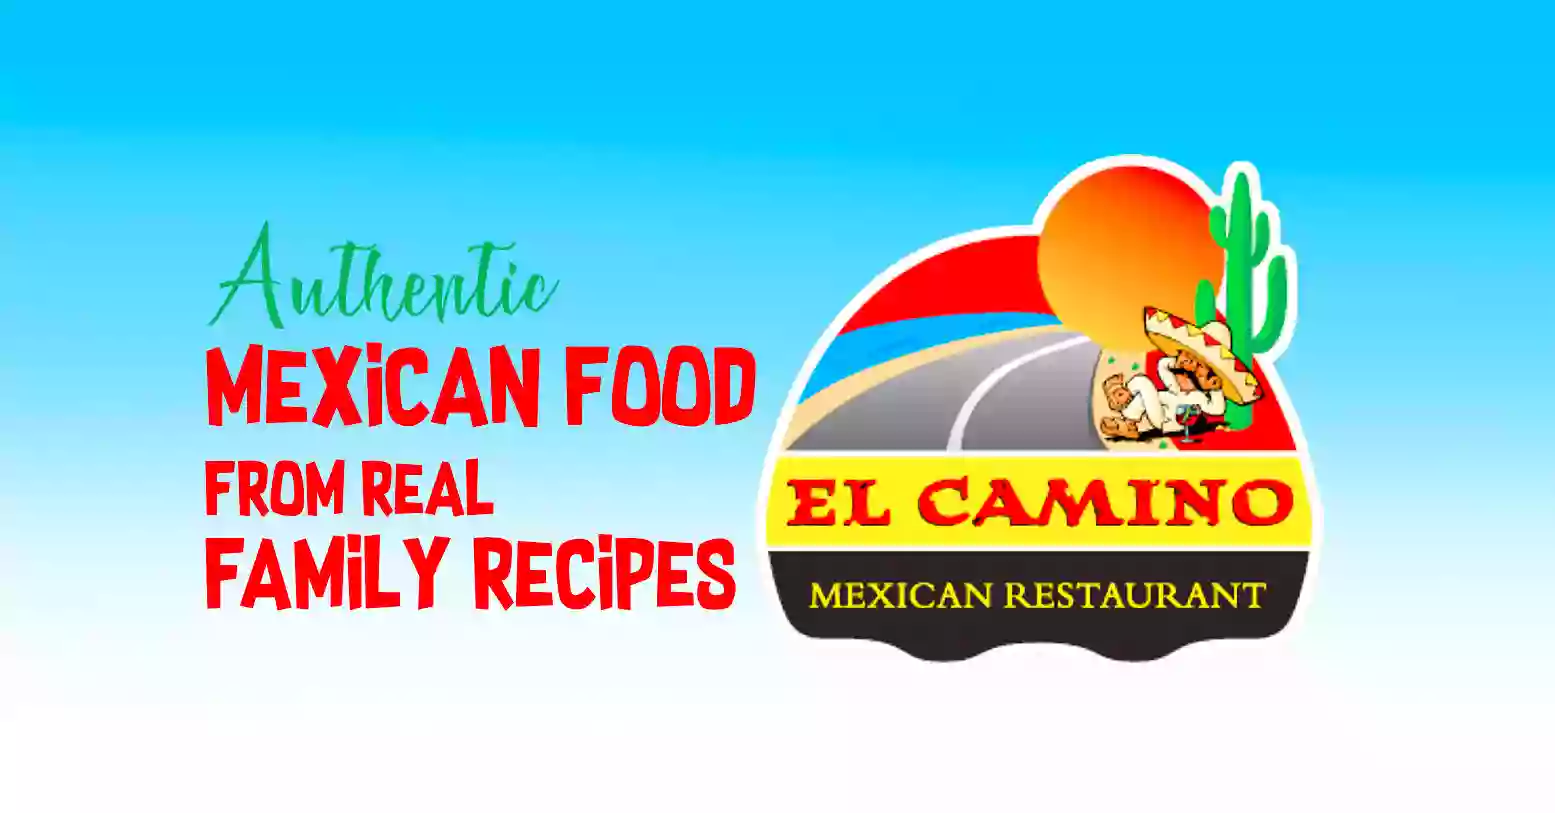 El Camino Mexican Restaurant